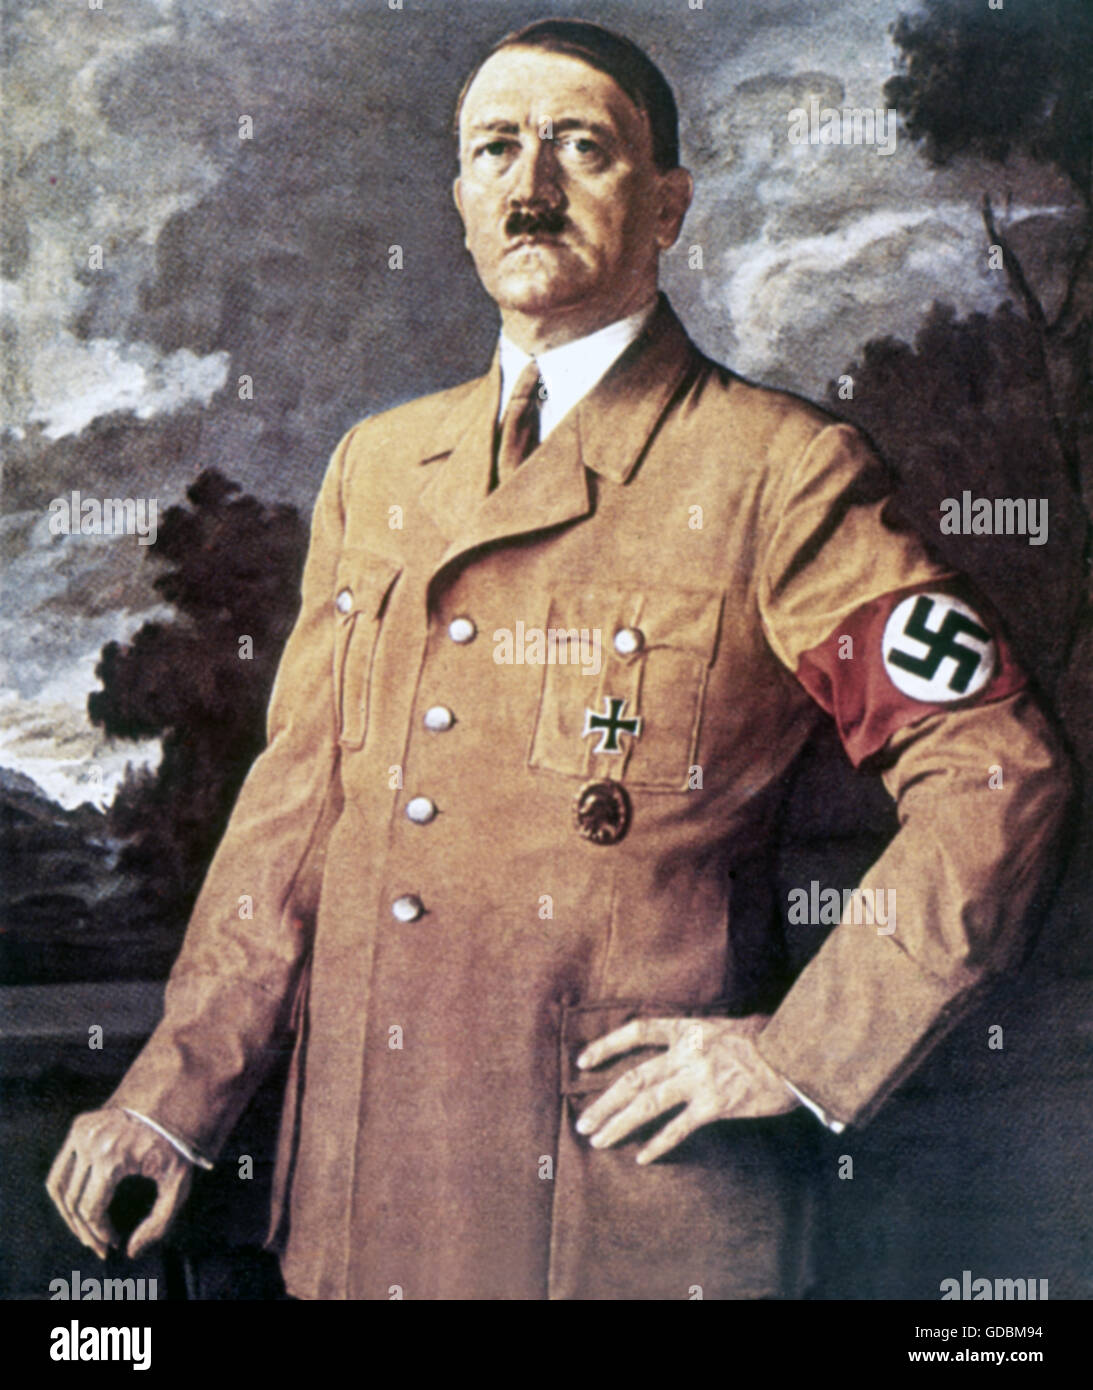 Hitler, Adolf, 20.4.1889 - 30.4.1945, politico tedesco (NSDAP), Cancelliere del Reich 30.1.1933 - 30.4.1945, mezza lunghezza, pittura, 1930s, Foto Stock